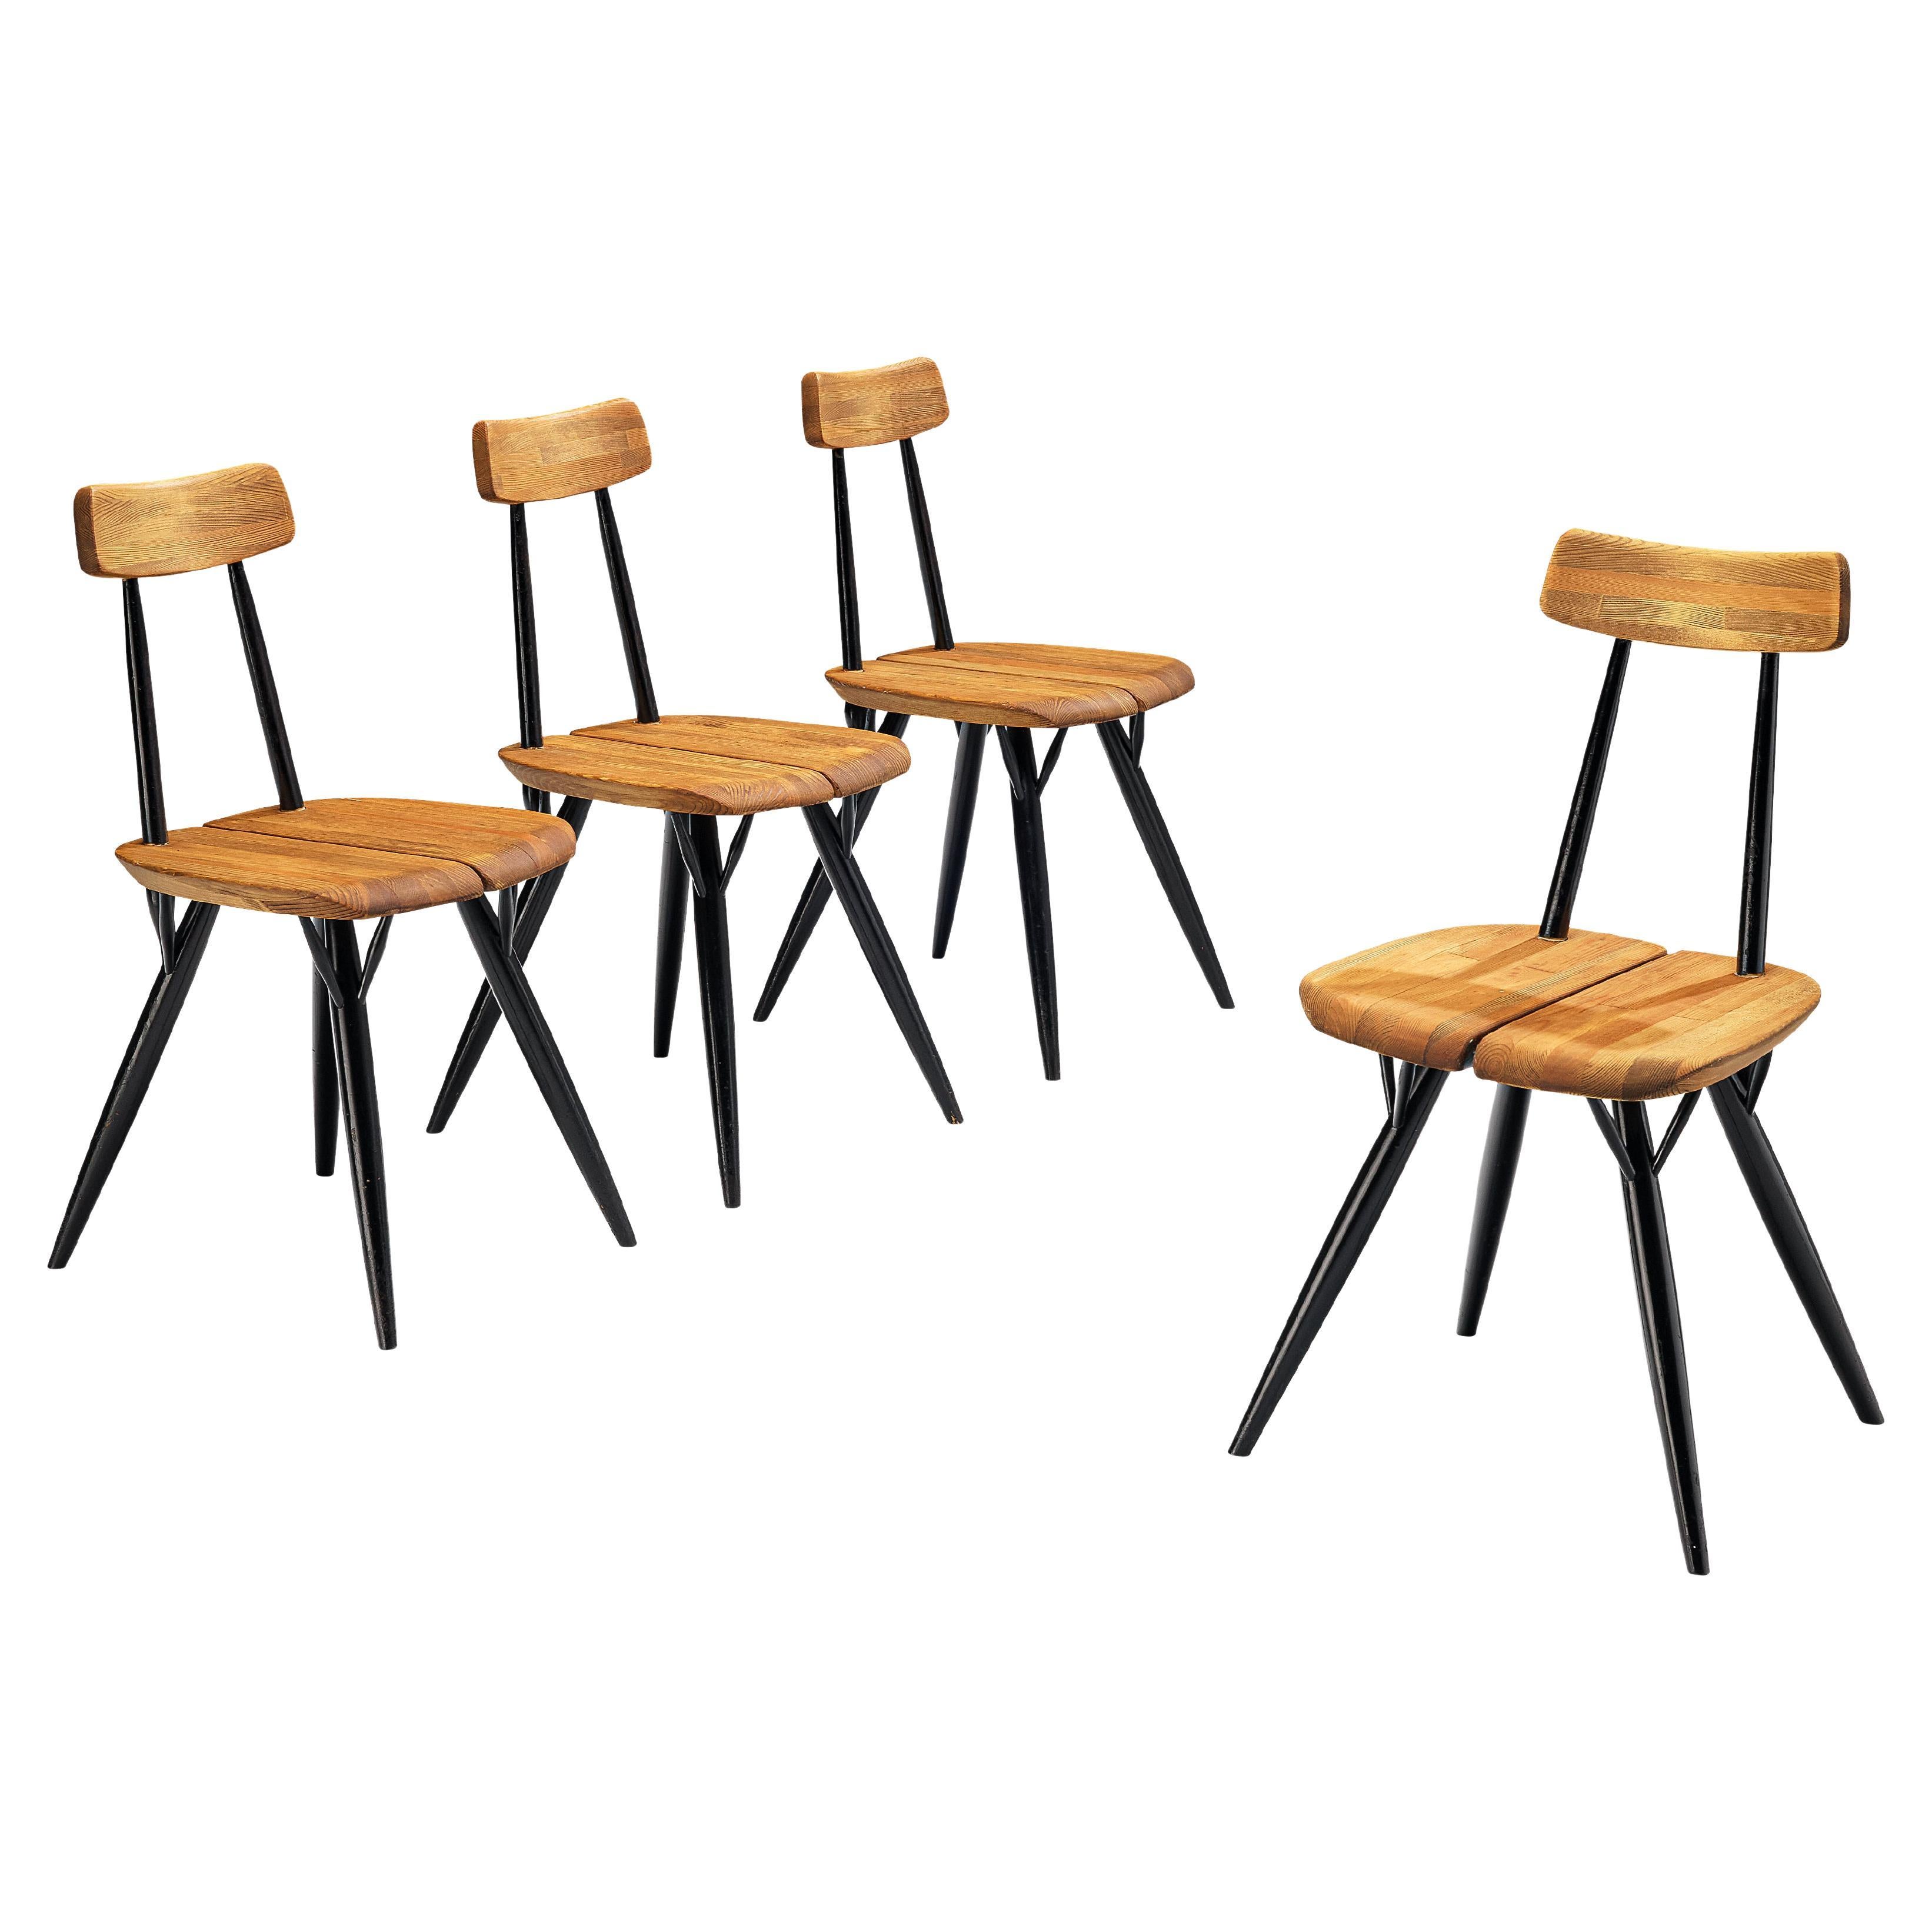 Ilmari Tapiovaara for Laukaan Puu Set of Four 'Pirkka' Chairs